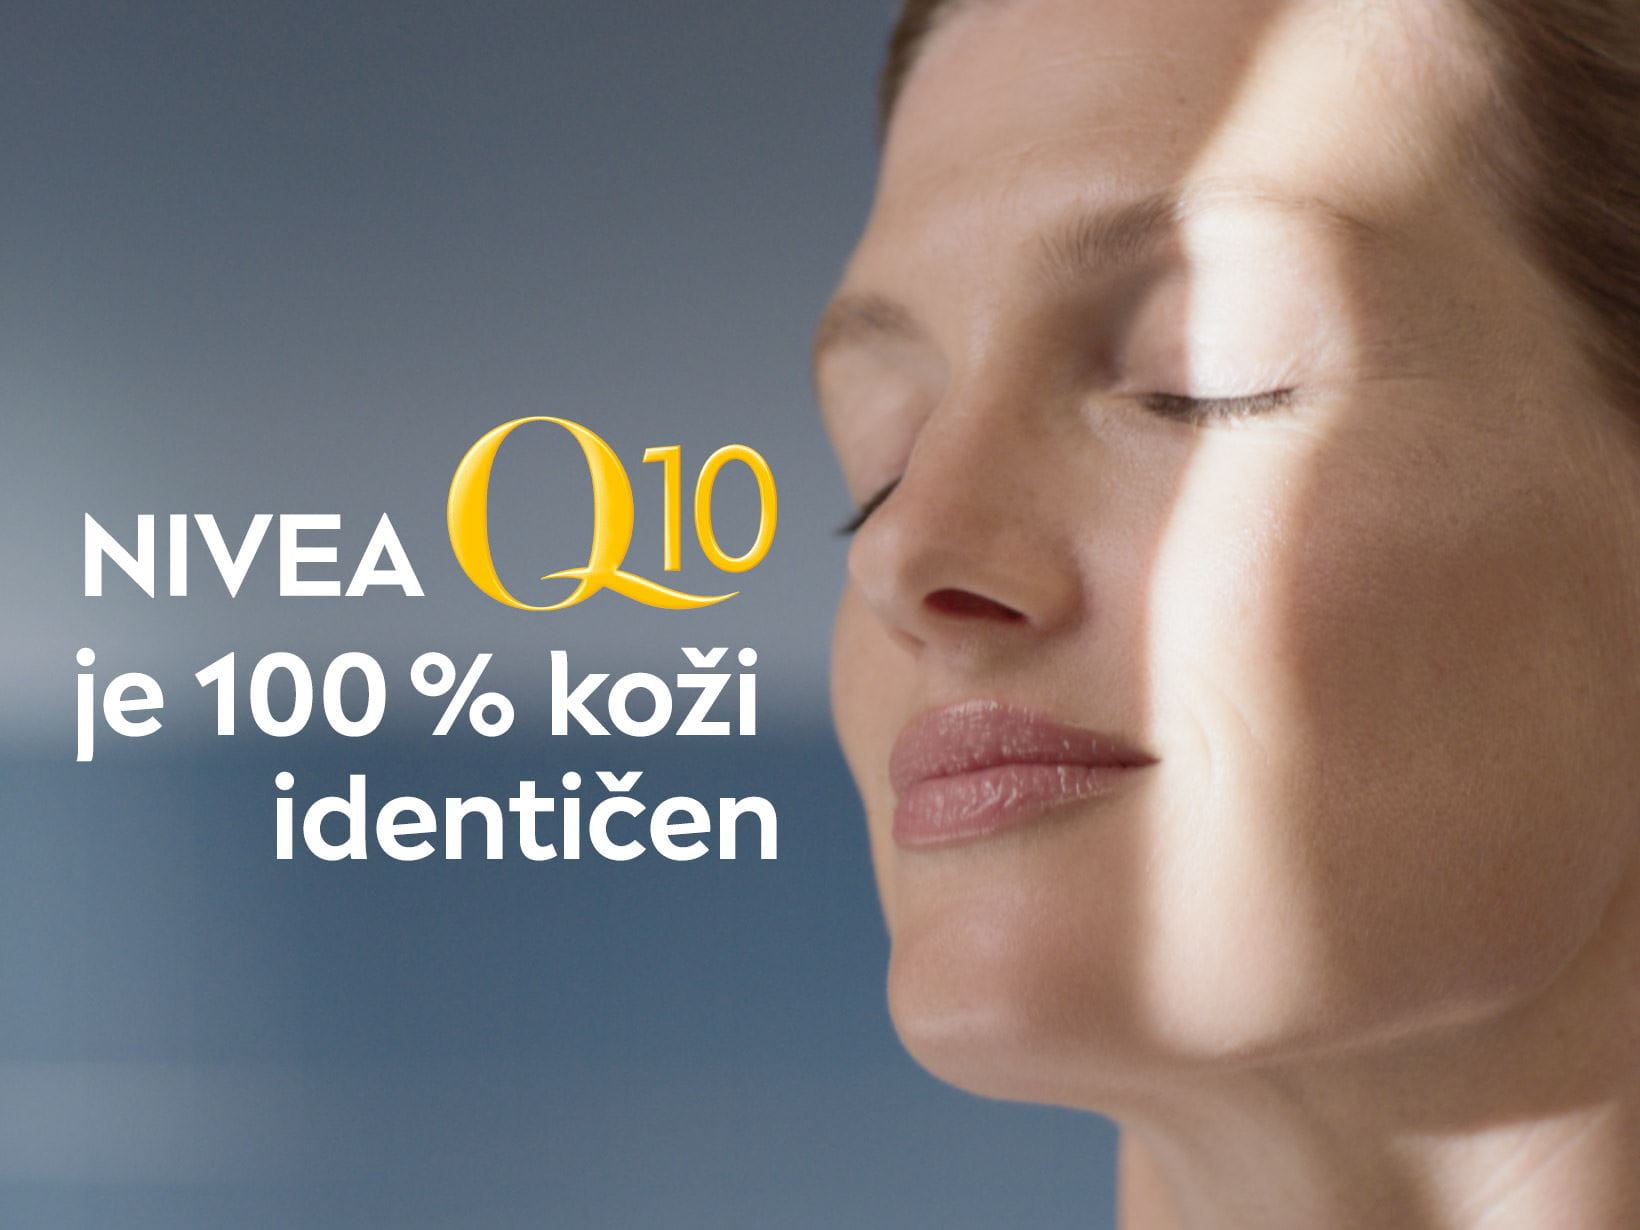 NIVEA Q10 je 100 % koži identičen